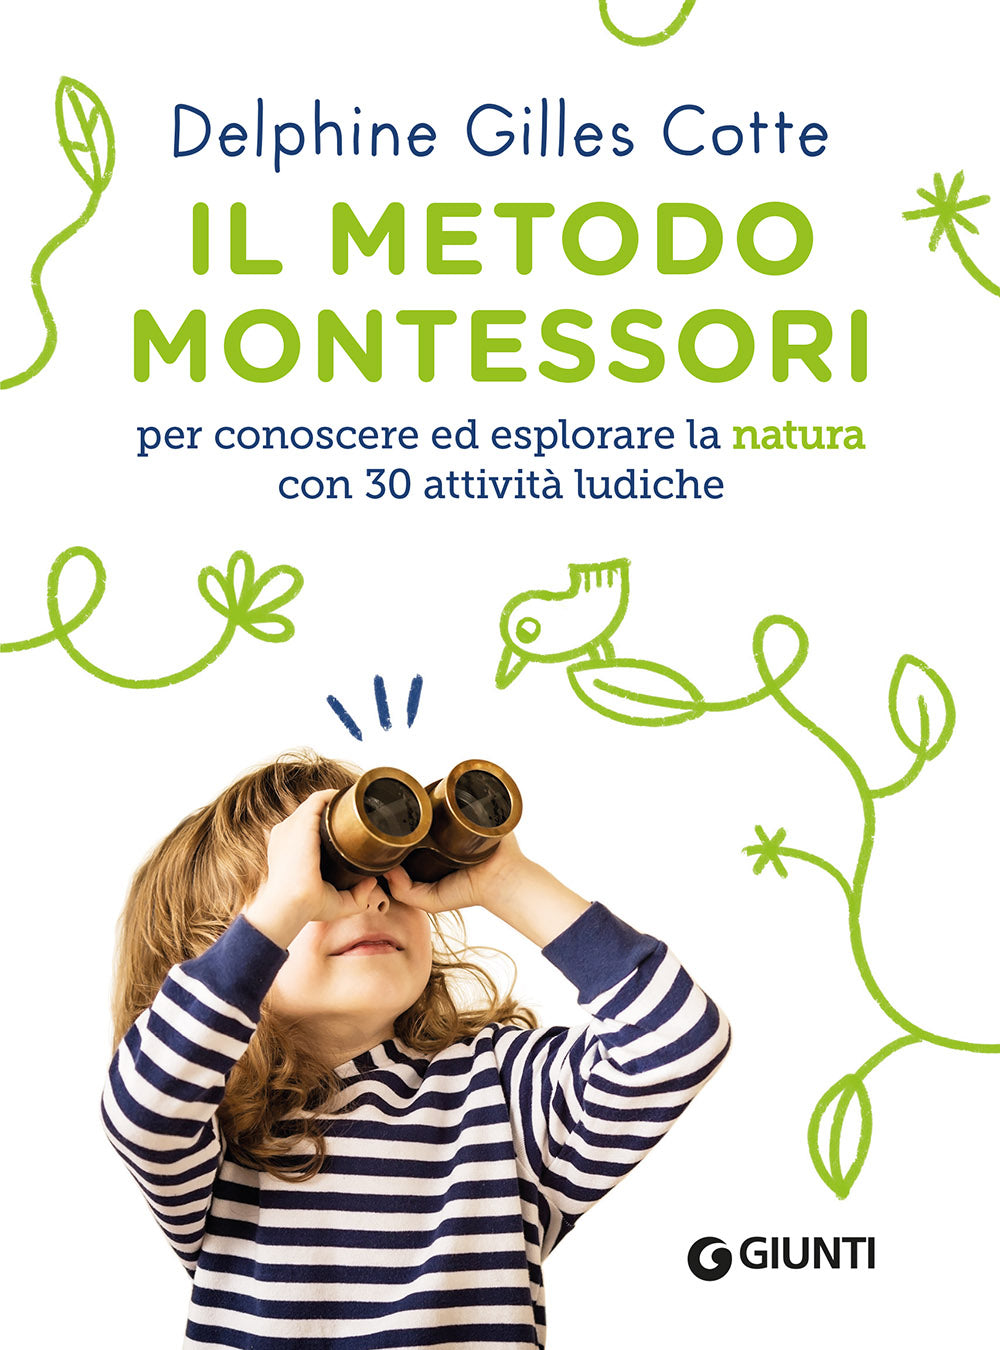 Il metodo Montessori per conoscere ed esplorare la natura ::con 30 attività ludiche